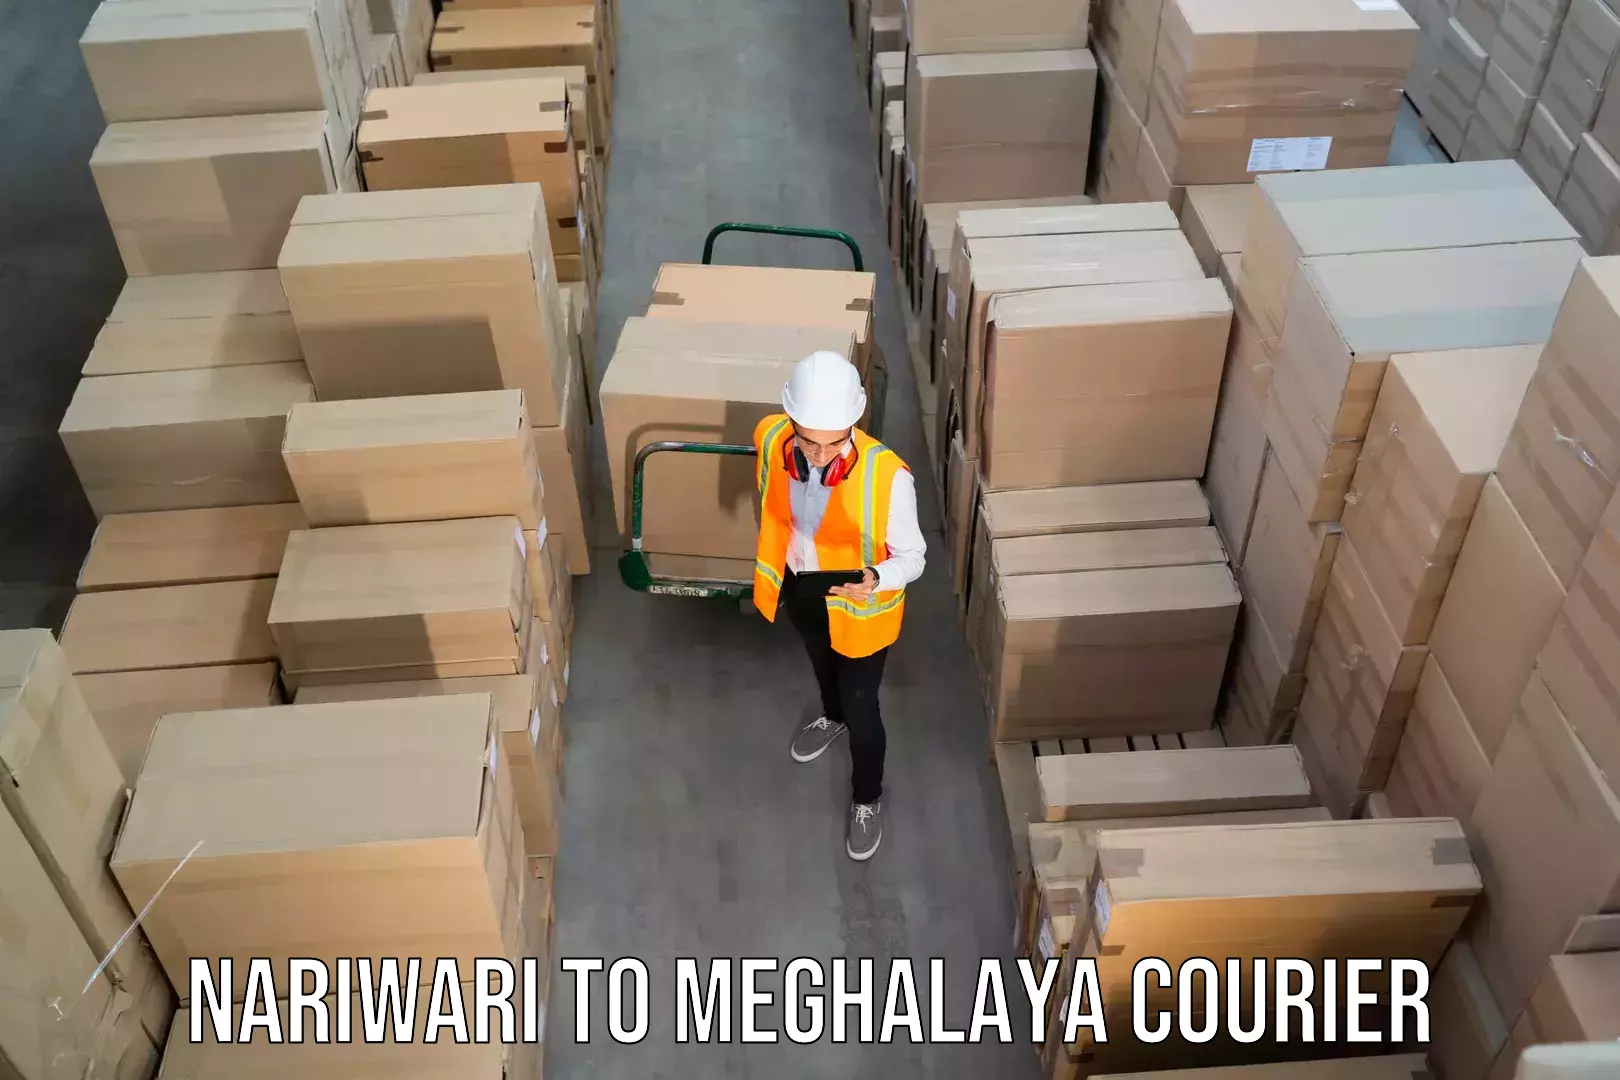 Full-service courier options Nariwari to NIT Meghalaya